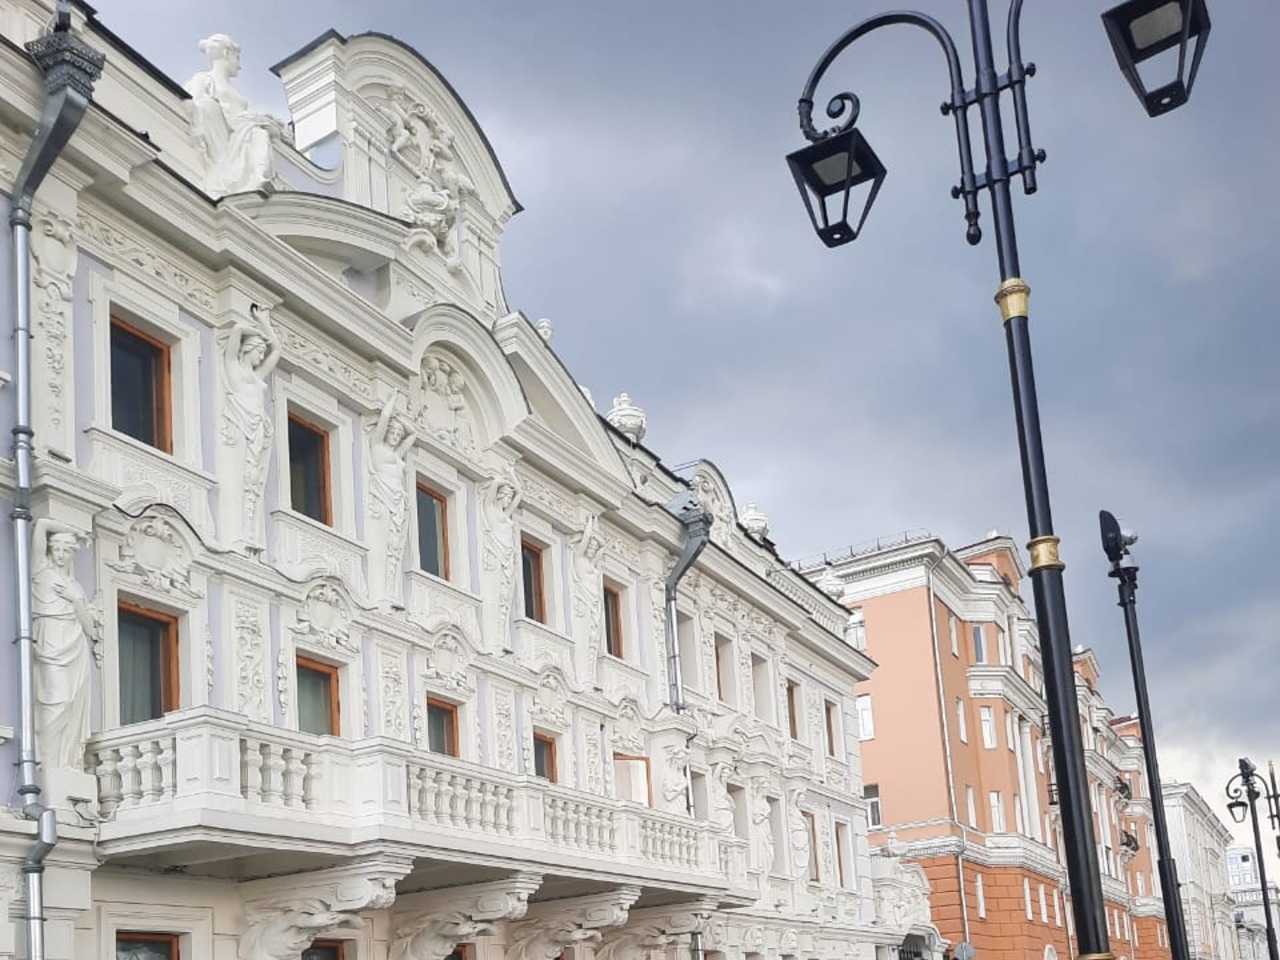 Очаровательный Нижний Новгород | Цена 5700₽, отзывы, описание экскурсии